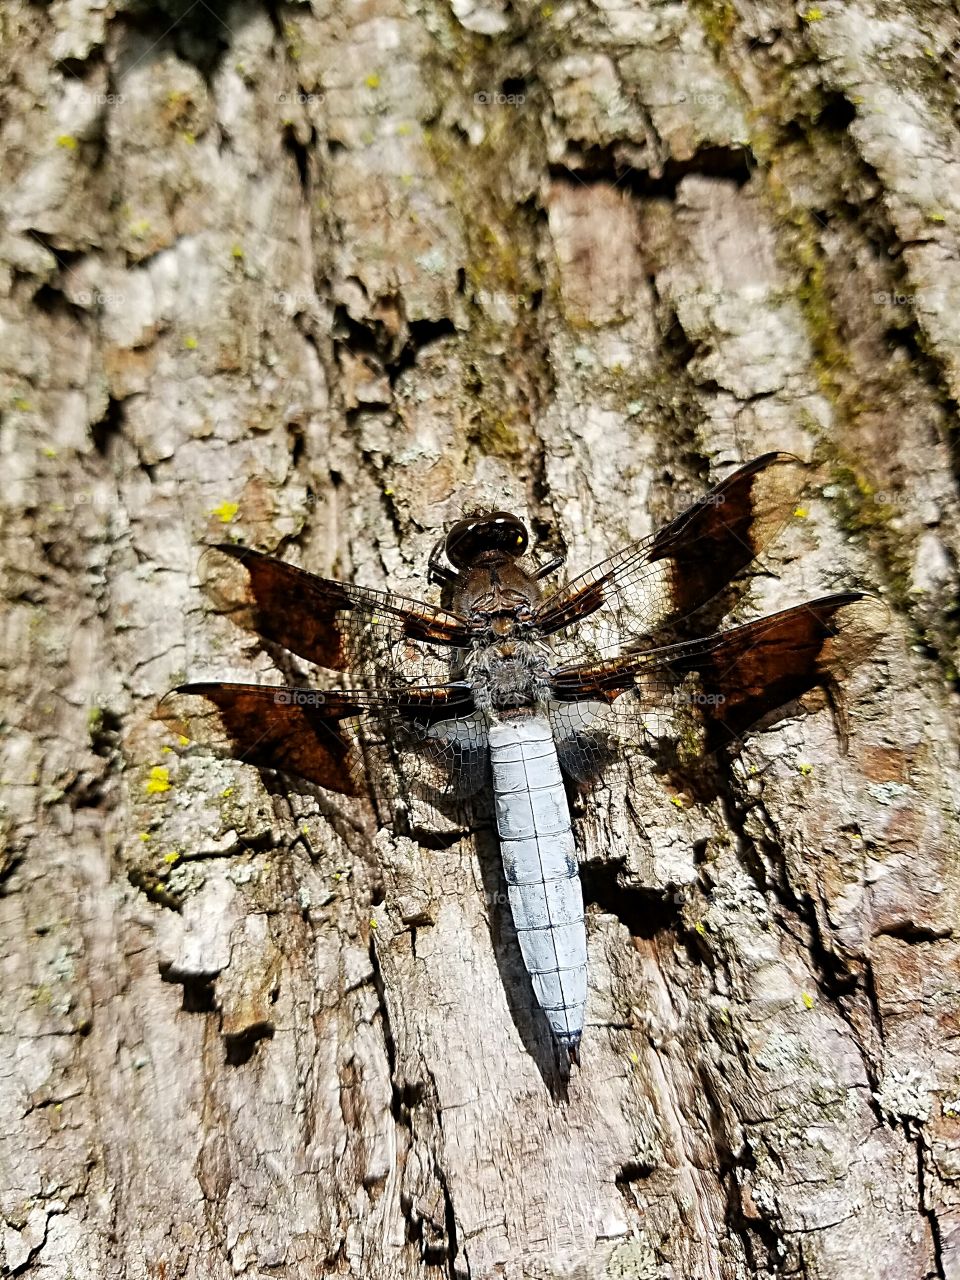 dragonfly on tree bark